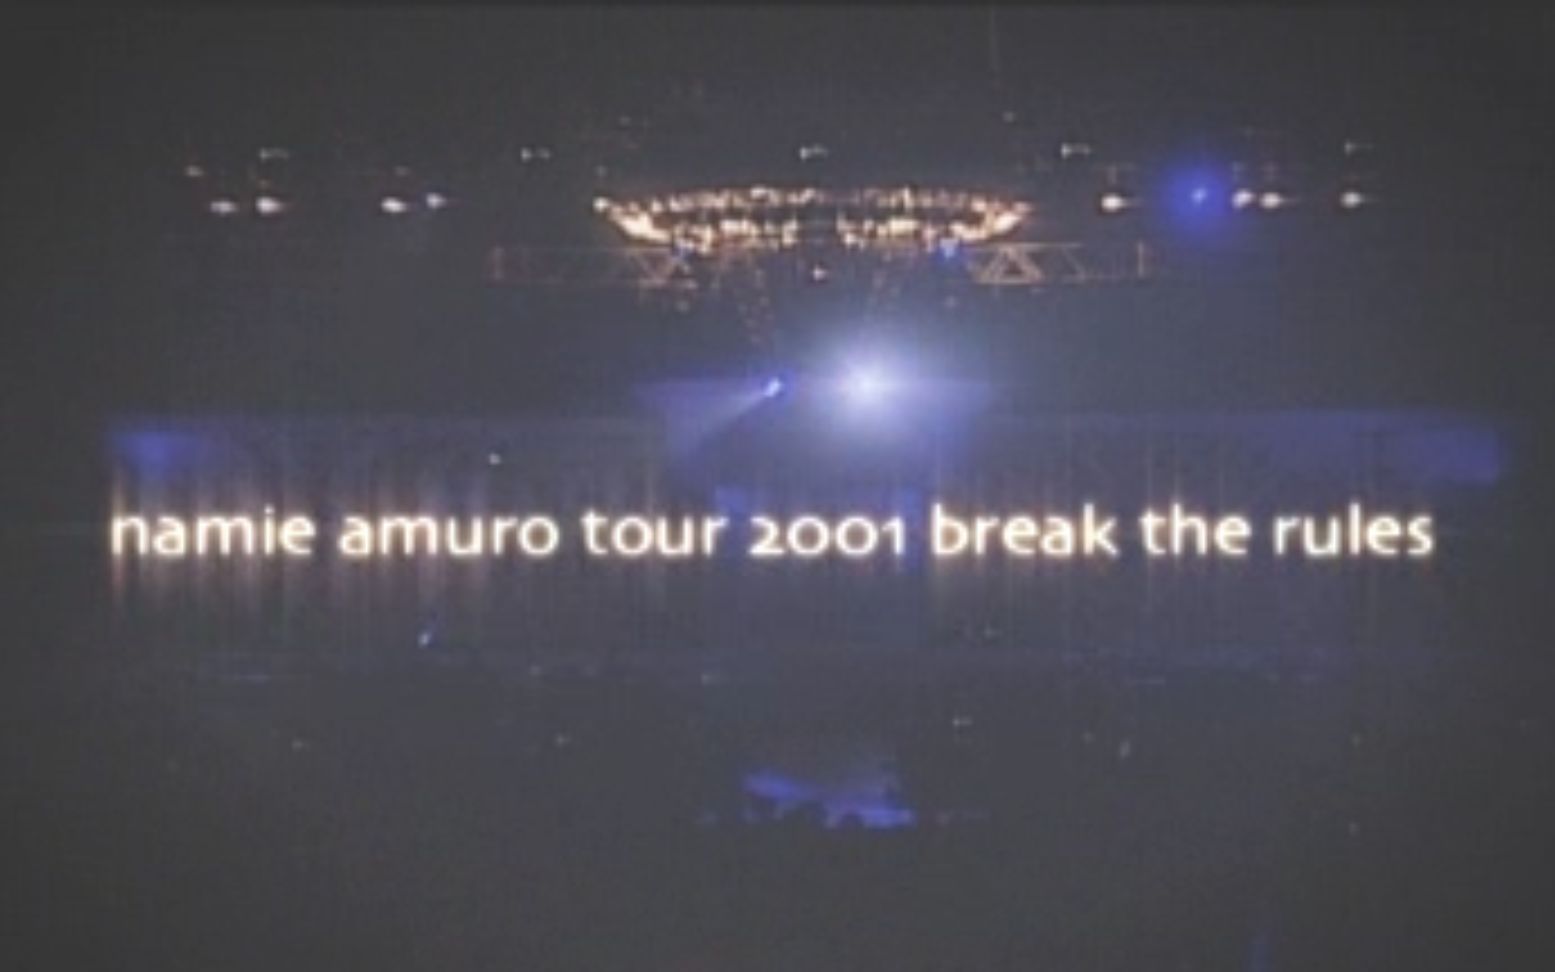 安室奈美惠】break the rules tour 2001-哔哩哔哩